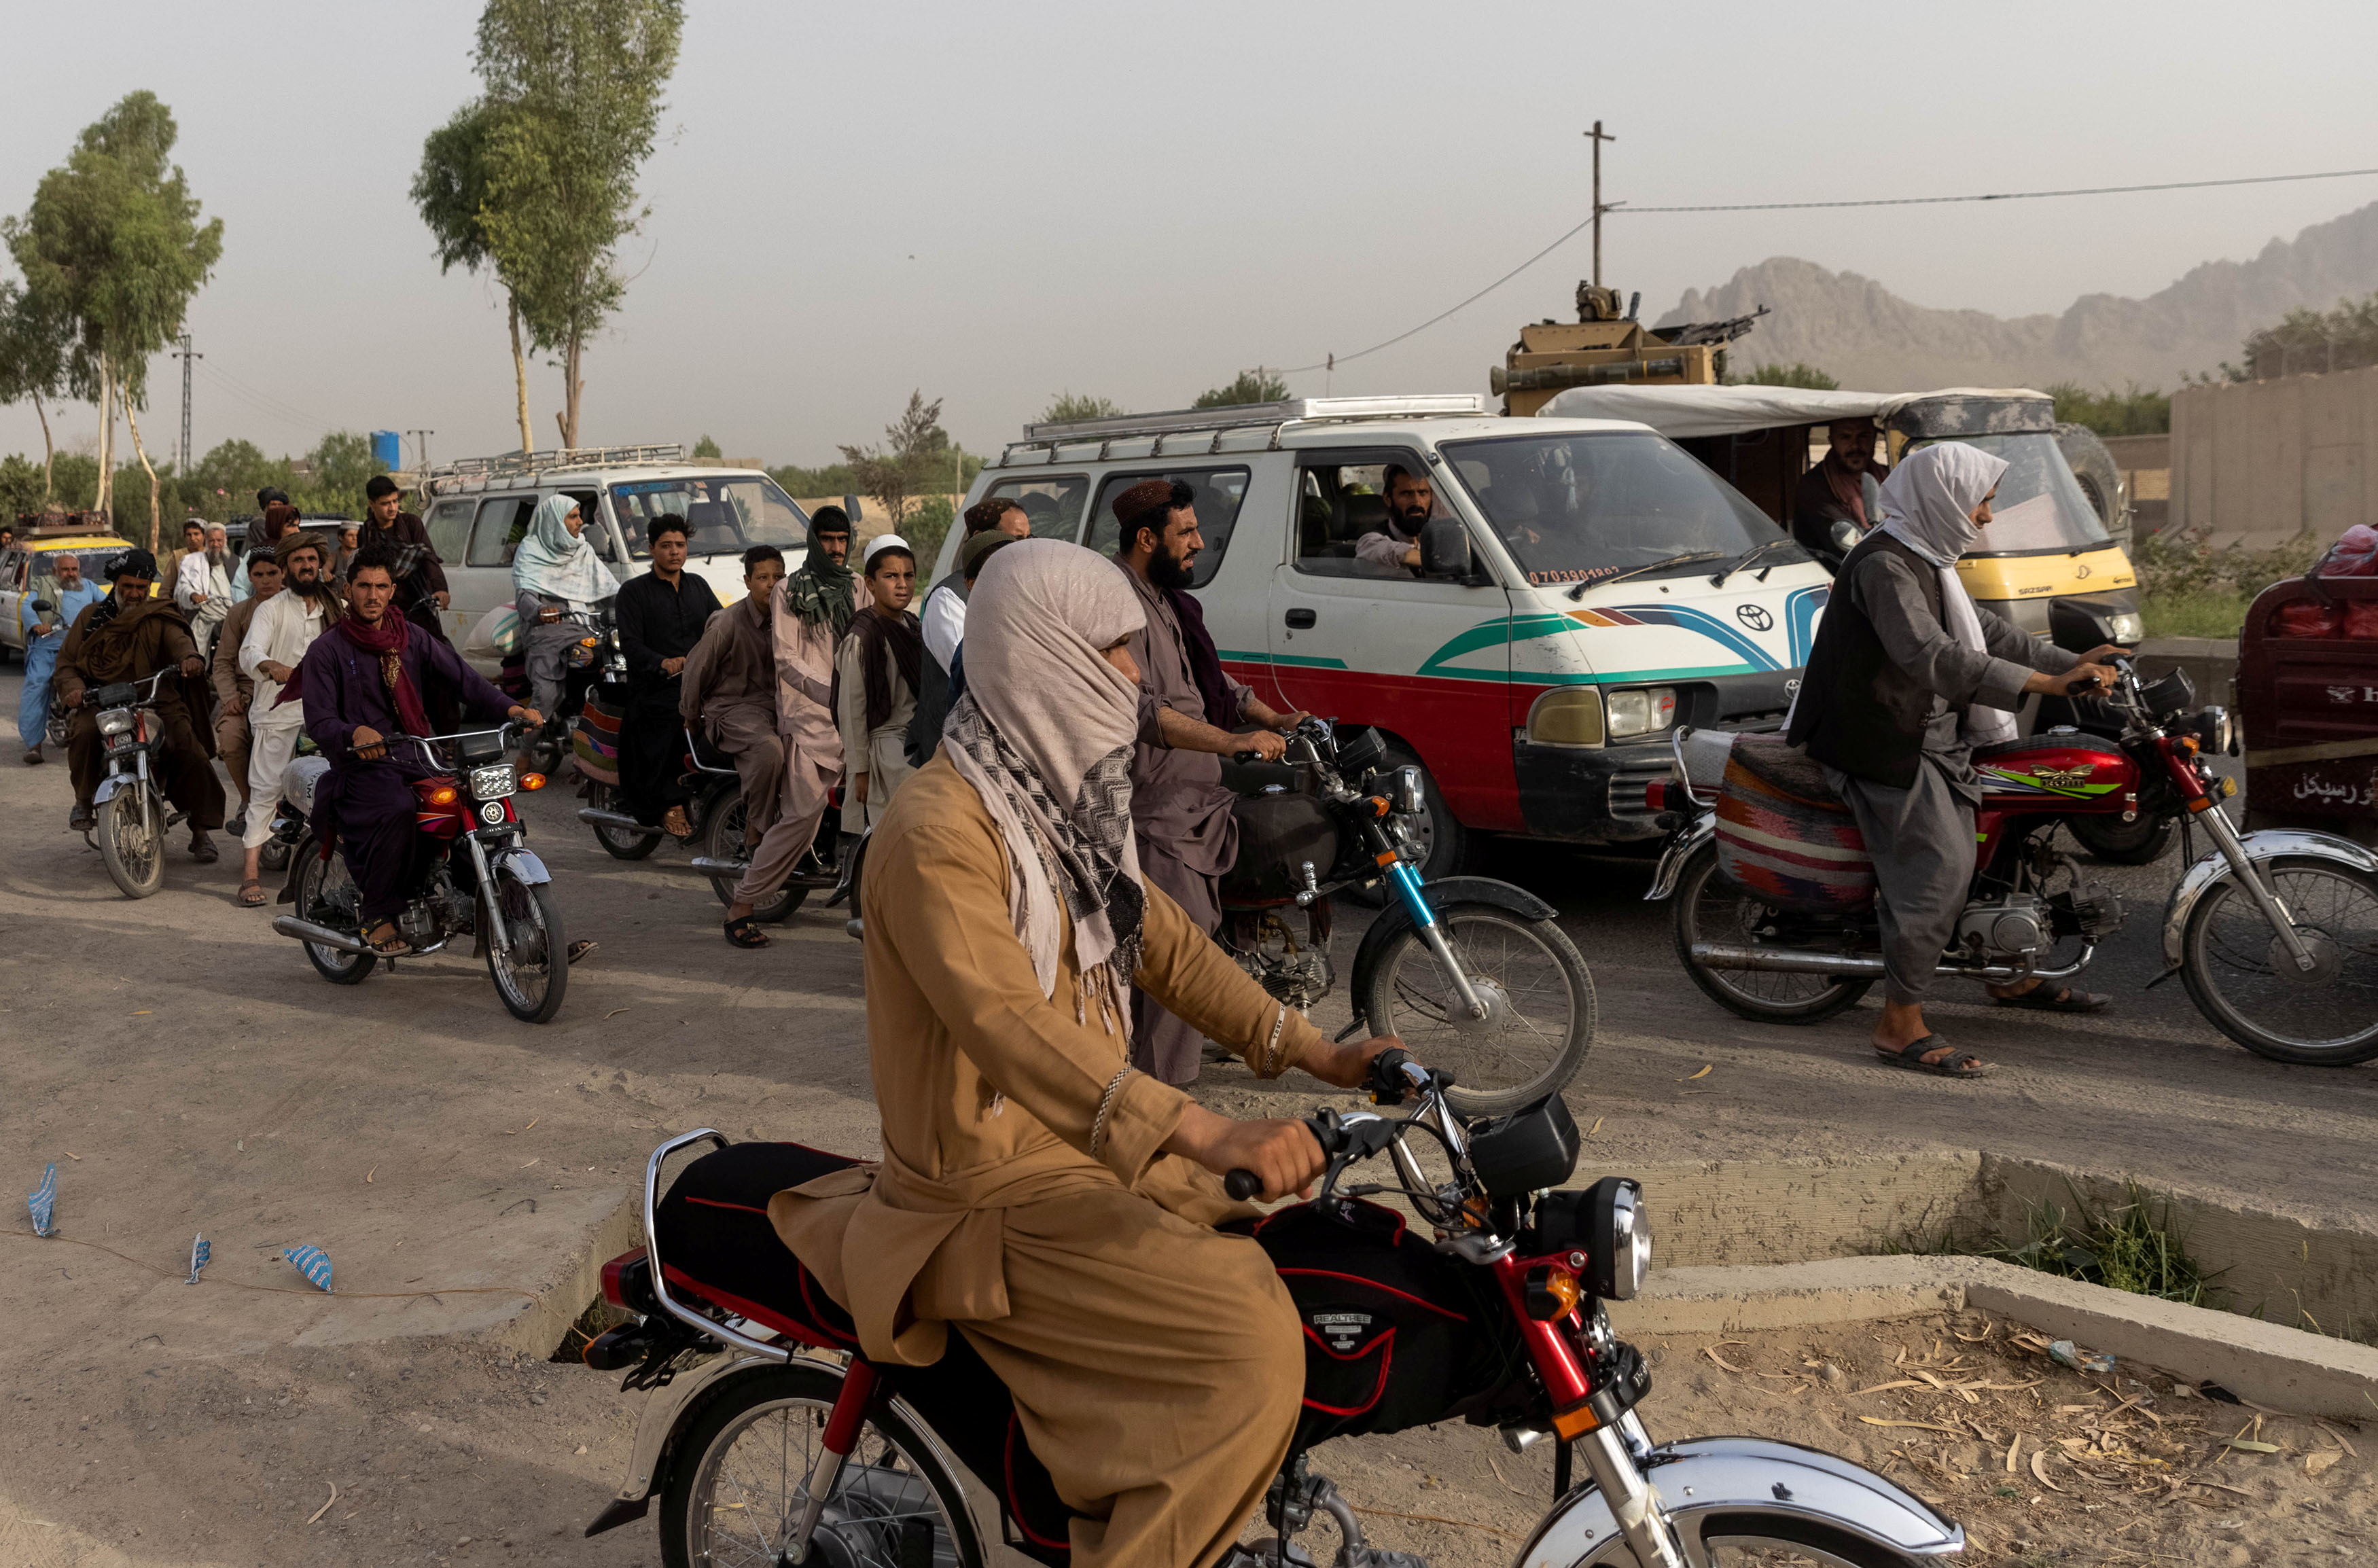 El tráfico se detiene mientras miembros de las fuerzas especiales afganas se reagrupan tras fuertes enfrentamientos con los talibanes durante la misión de rescate de un policía asediado en un puesto de control, en la provincia de Kandahar, Afganistán, el 13 de julio de 2021.